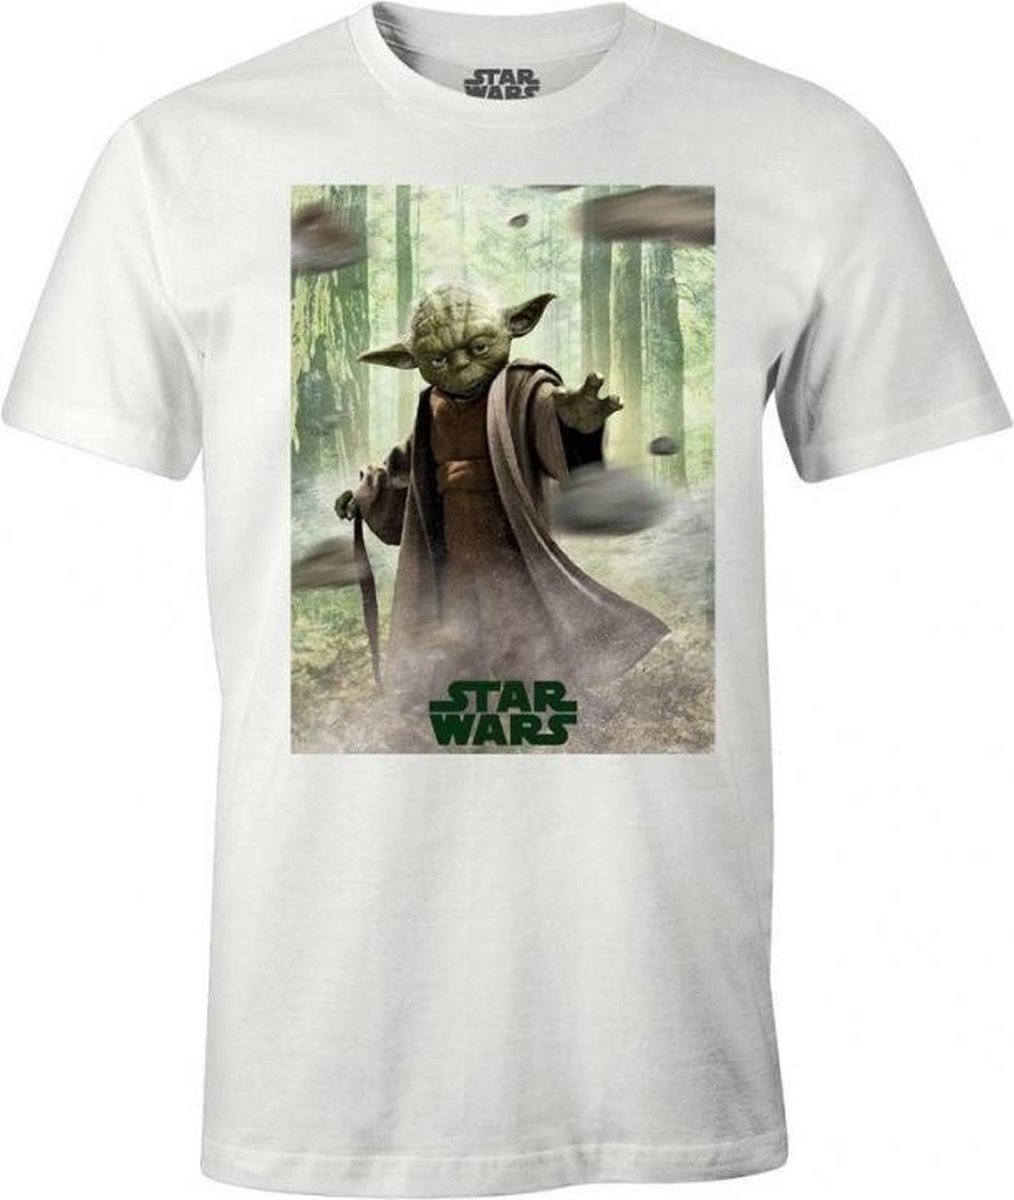 STAR WARS - T-Shirt - Yoda - (XXL)